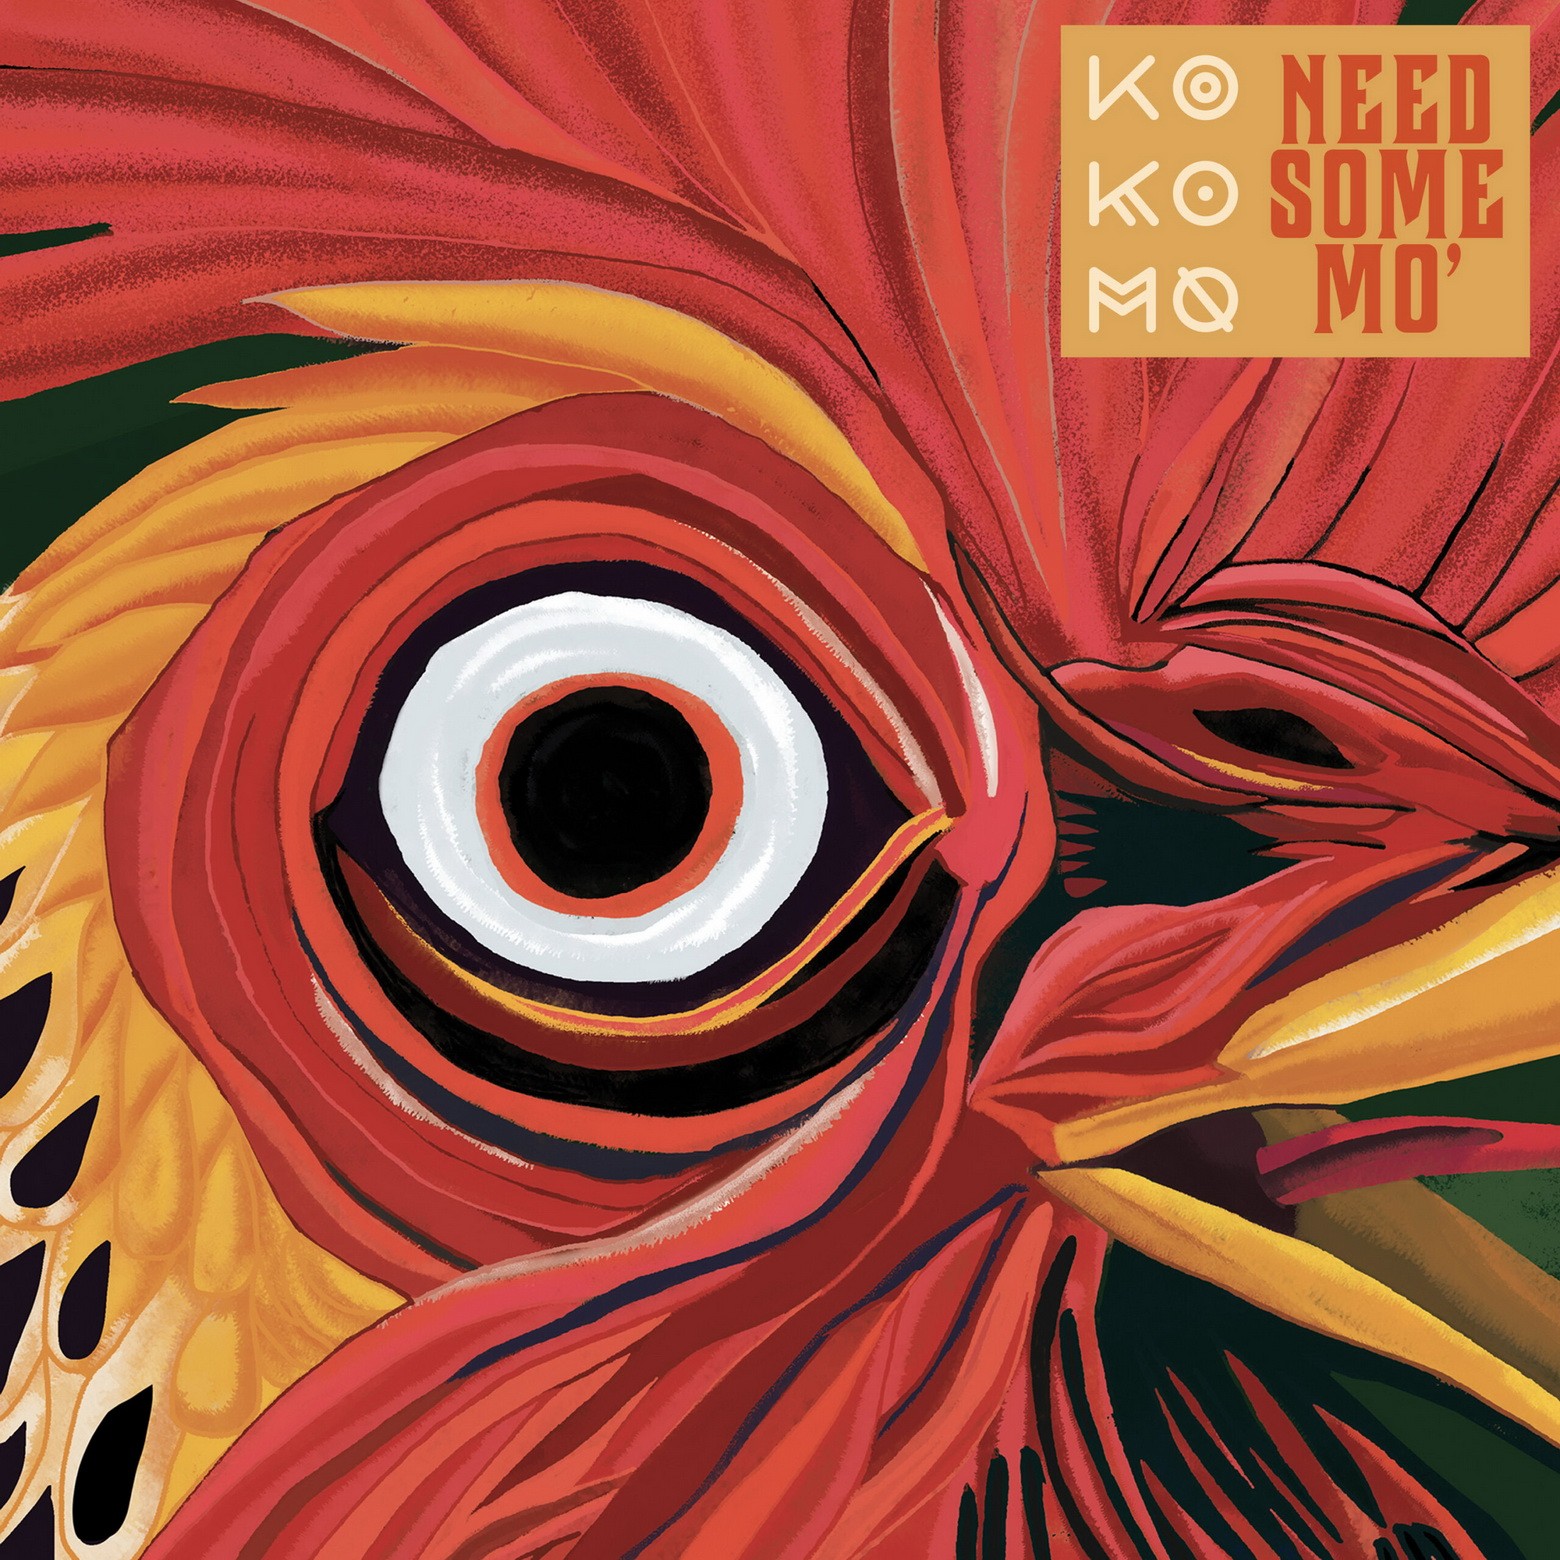 Ko Ko Mo - Need Some Mo’